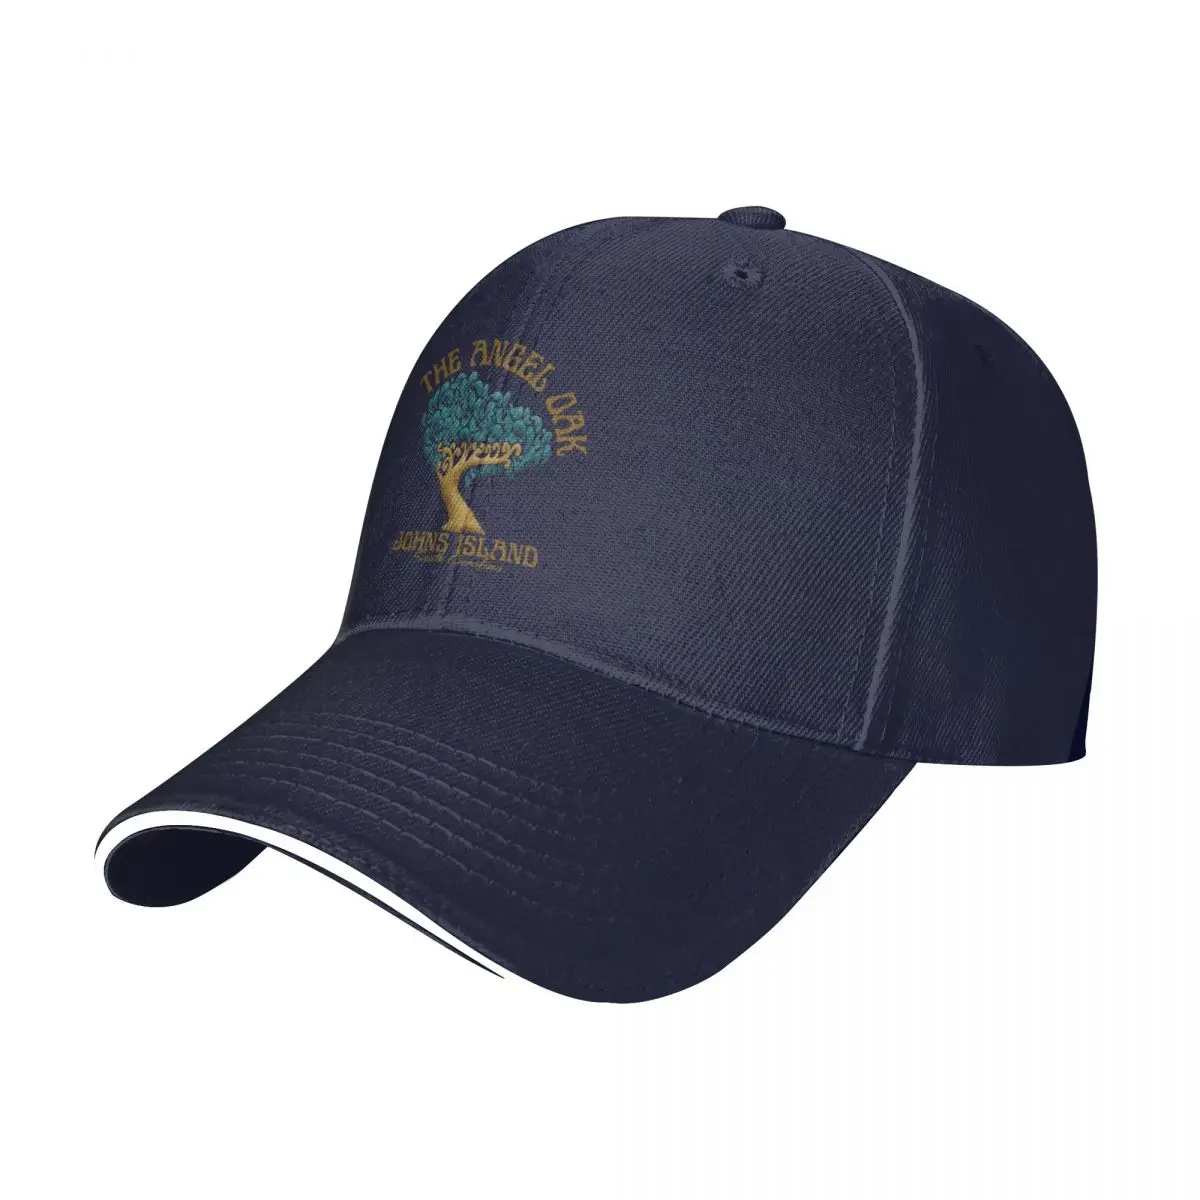 

Новая Кепка с изображением ангела дуба, остров Южная Каролина, коричневая бейсболка для отпуска/пляжа, новая Кепка, кепки для гольфа для женщин и мужчин